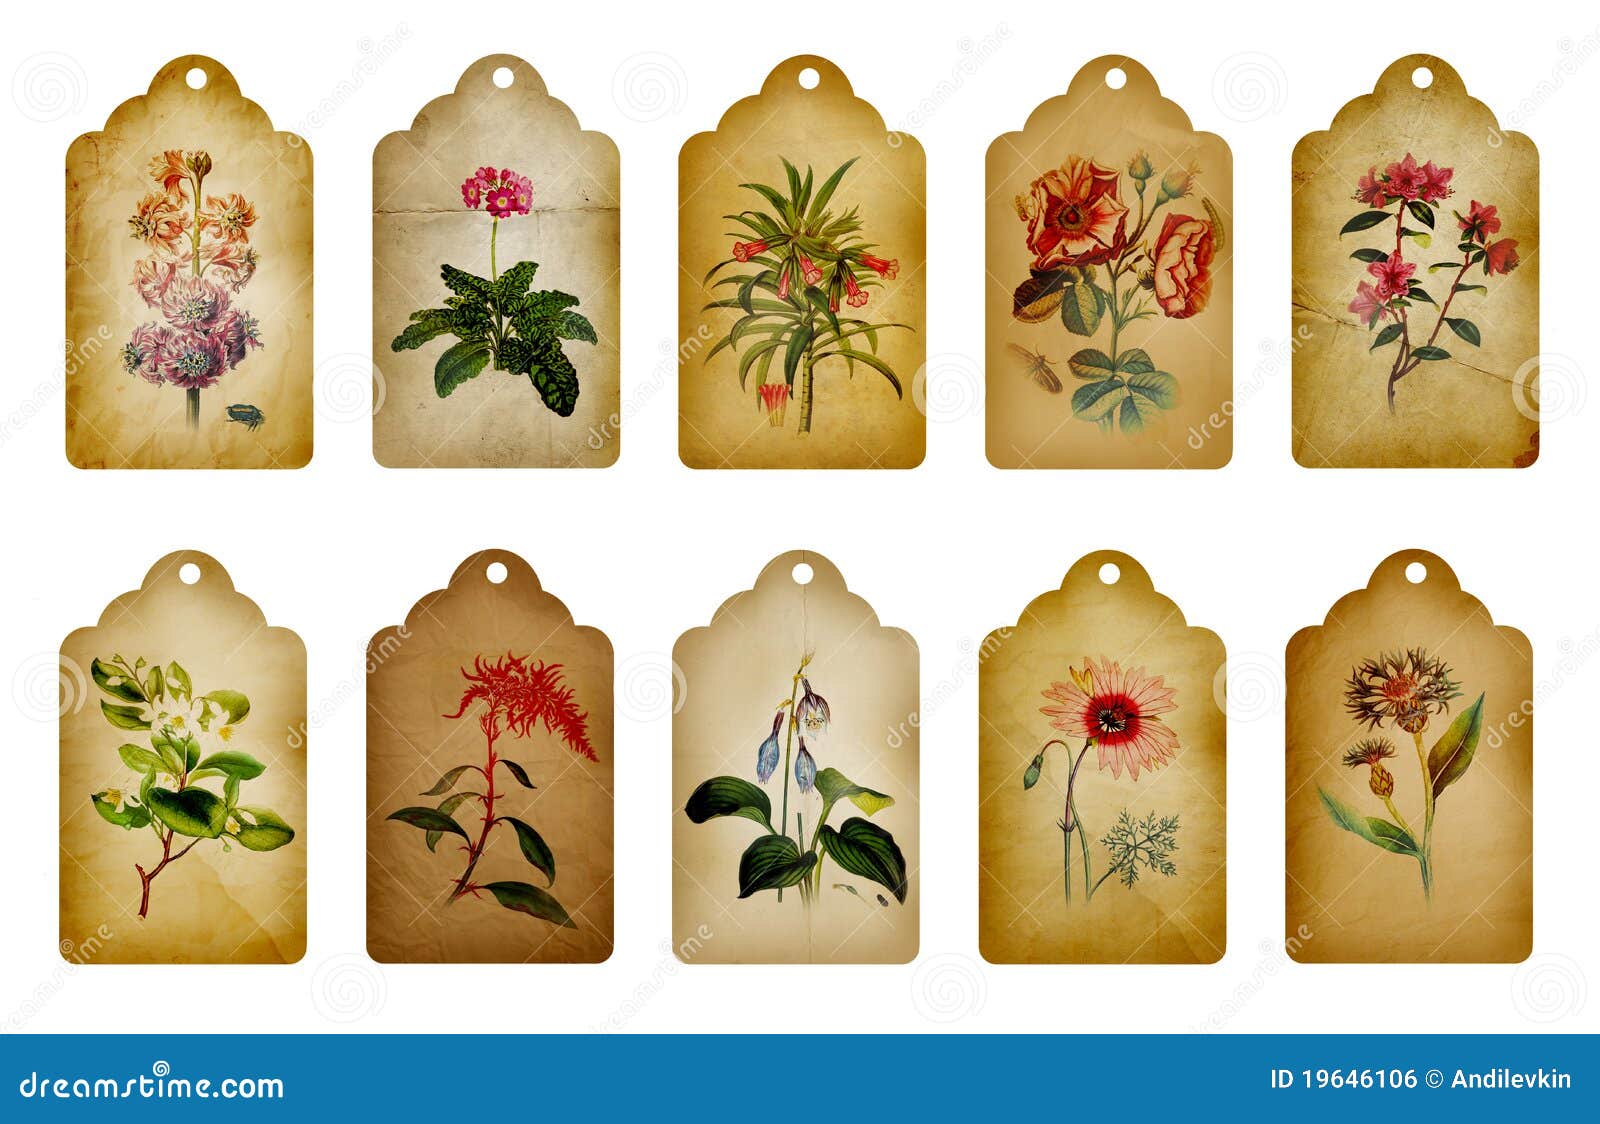 vintage flower labels stock illustration illustration of